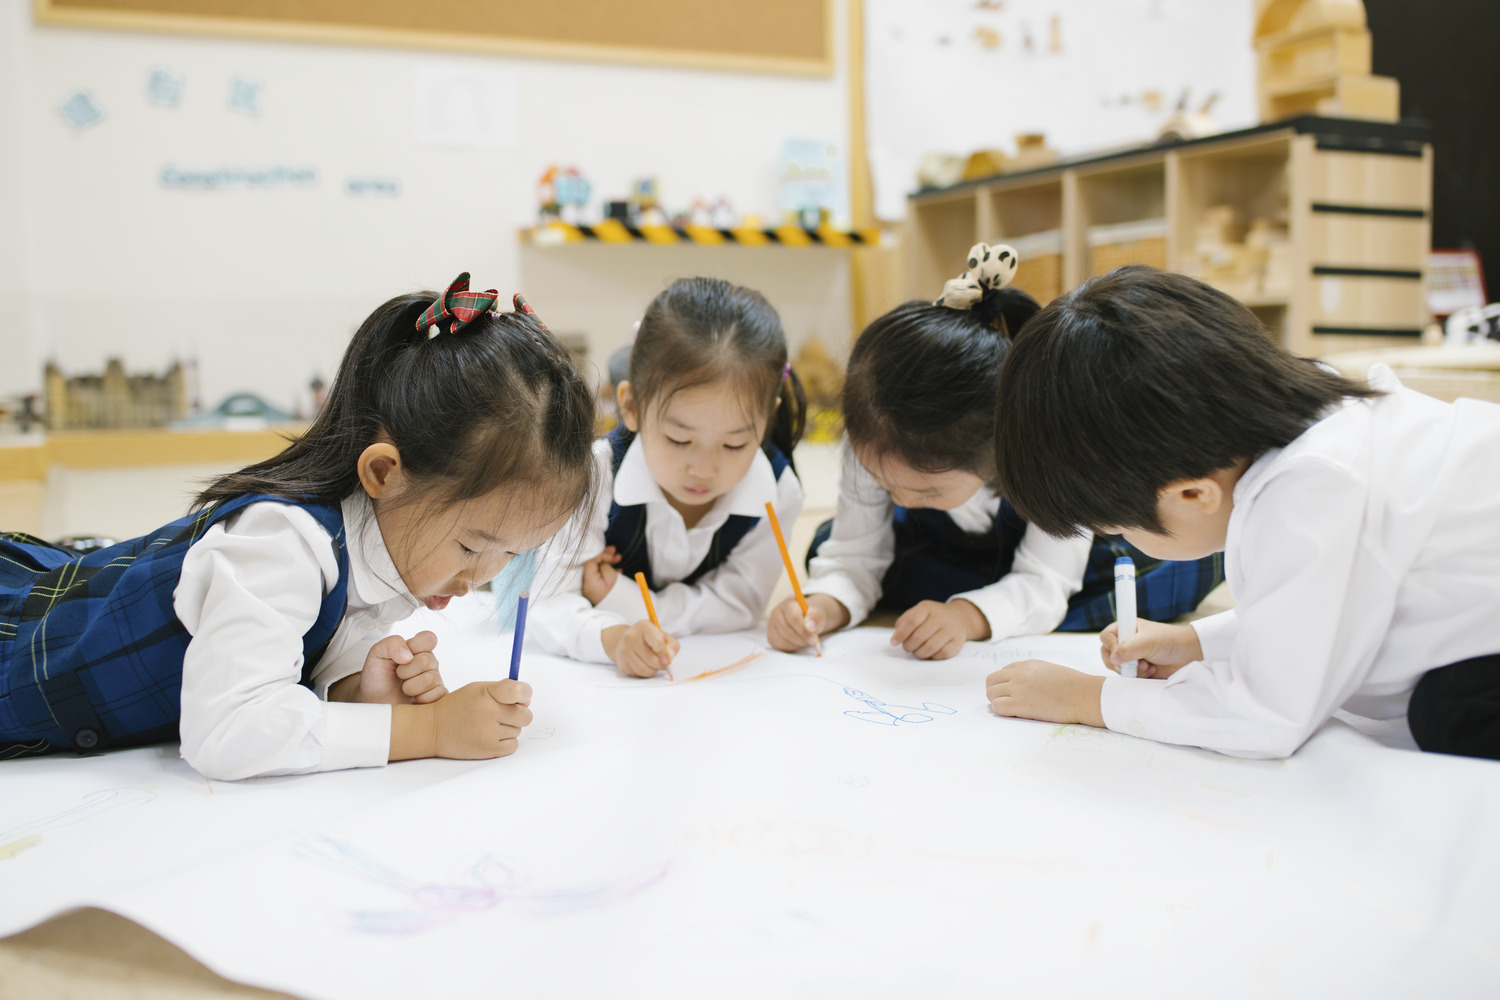 上海惠立幼儿园学前教育课程之高效学习